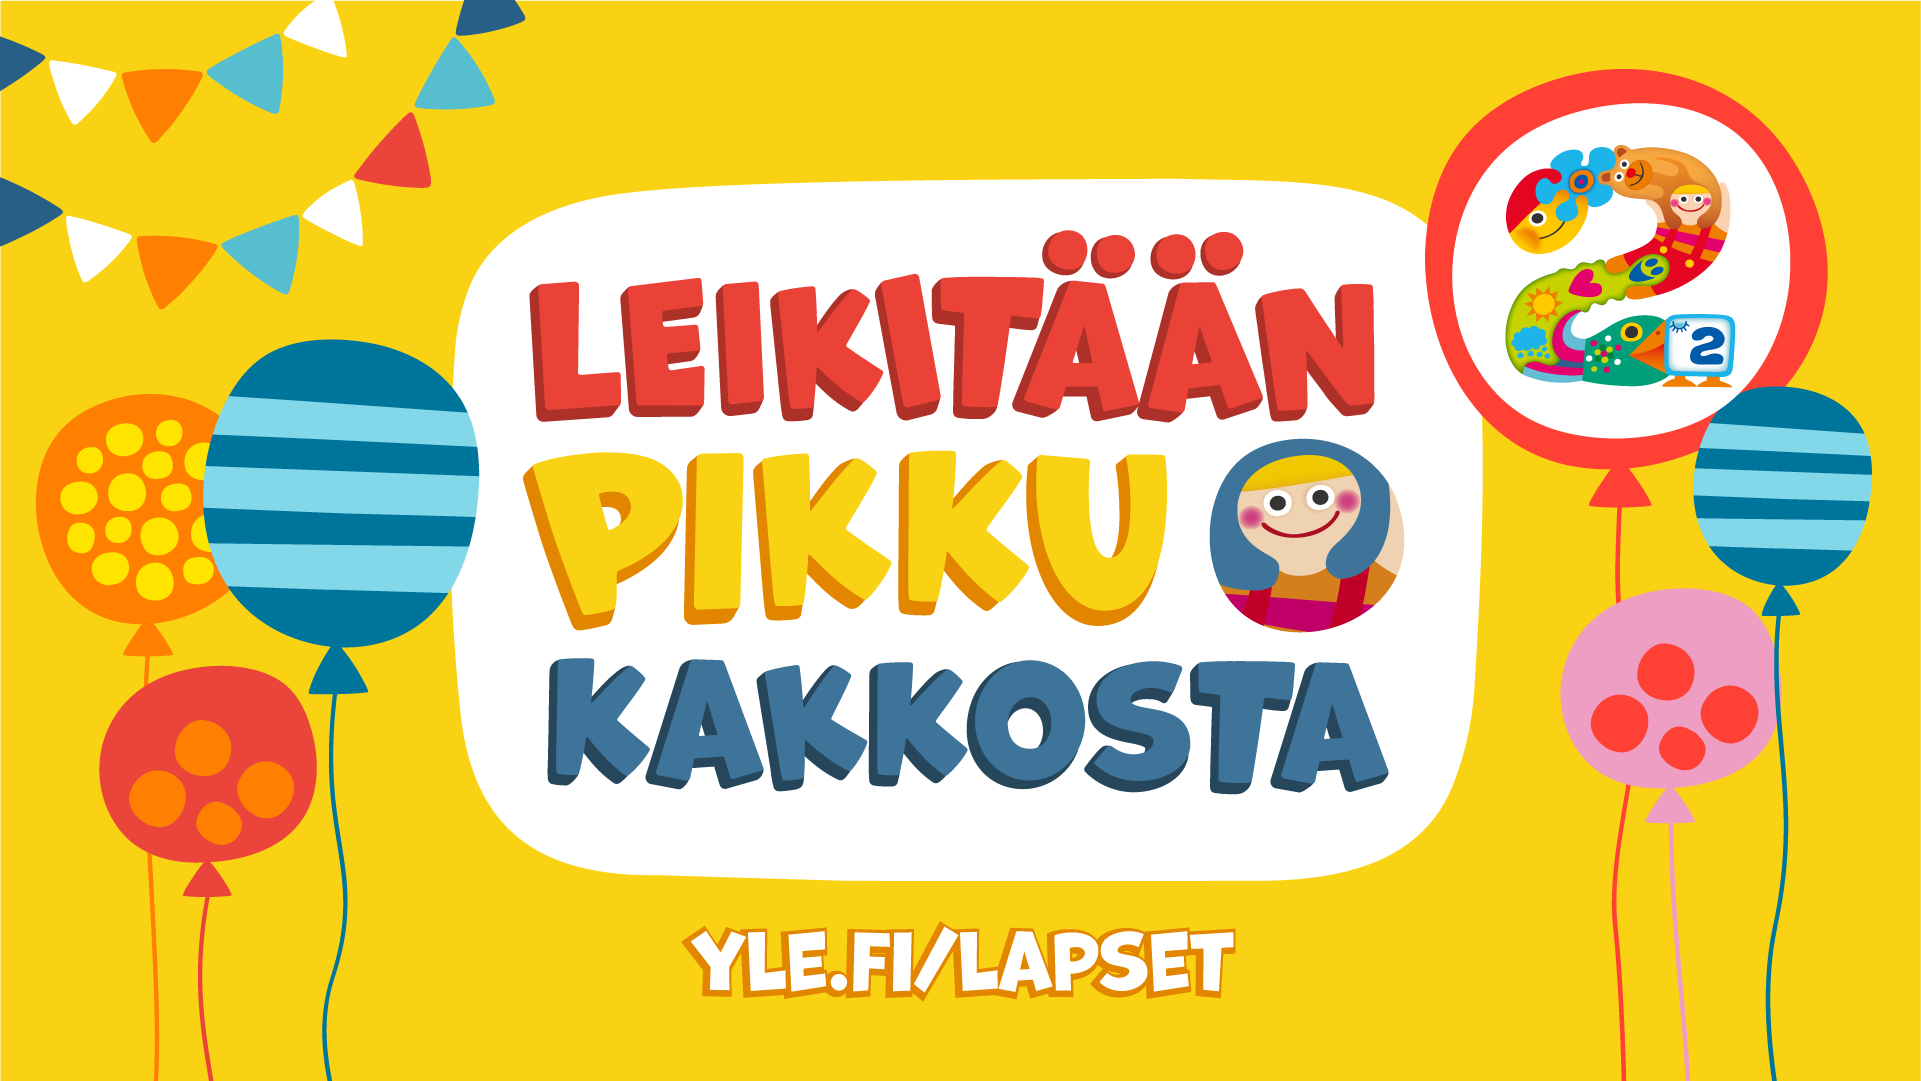 Leikitään Pikku Kakkosta. yle.fi/lapset